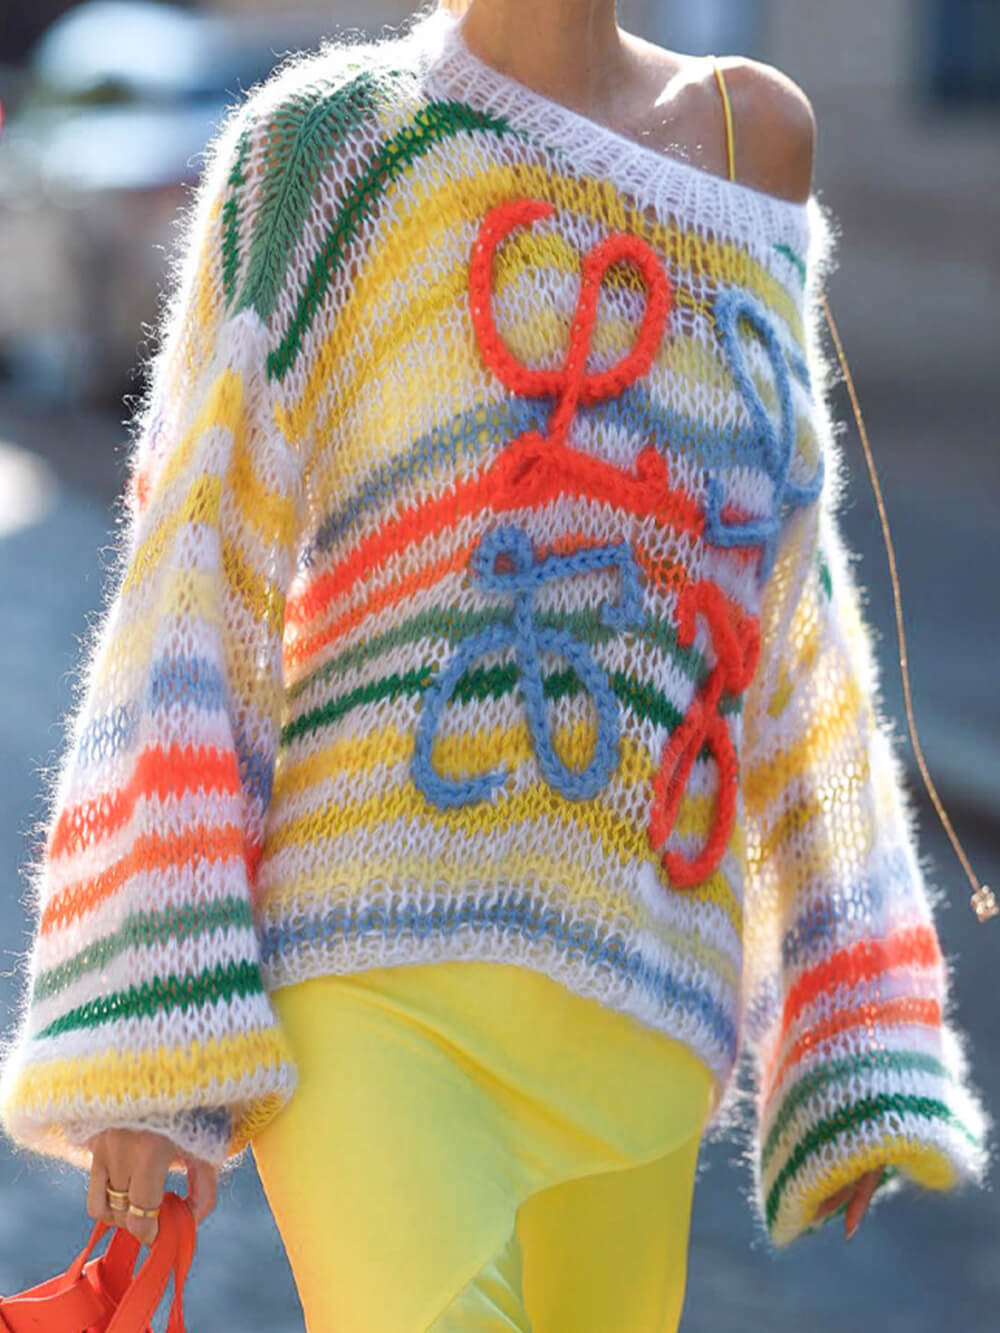 इंद्रधनुष कंट्रास्ट धारीदार स्वेटर